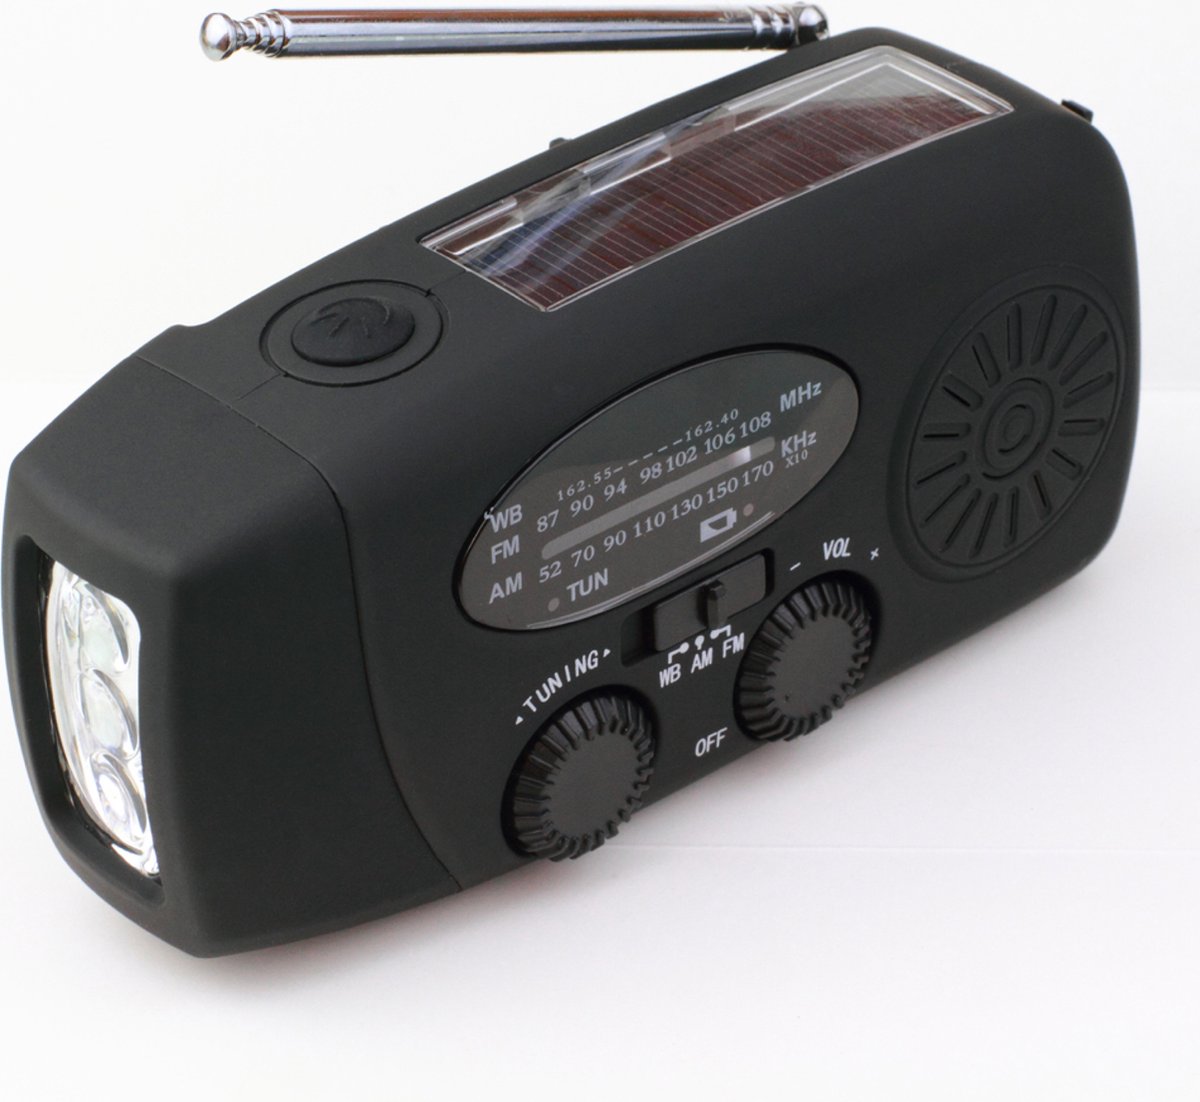 Draagbare Noodradio - Noodradio - Powerbank 2000 mAh - Zaklamp - Solar Opwindbaar - SOS alarm -USB kabel - Noodpakket - Kunstof - Zwart